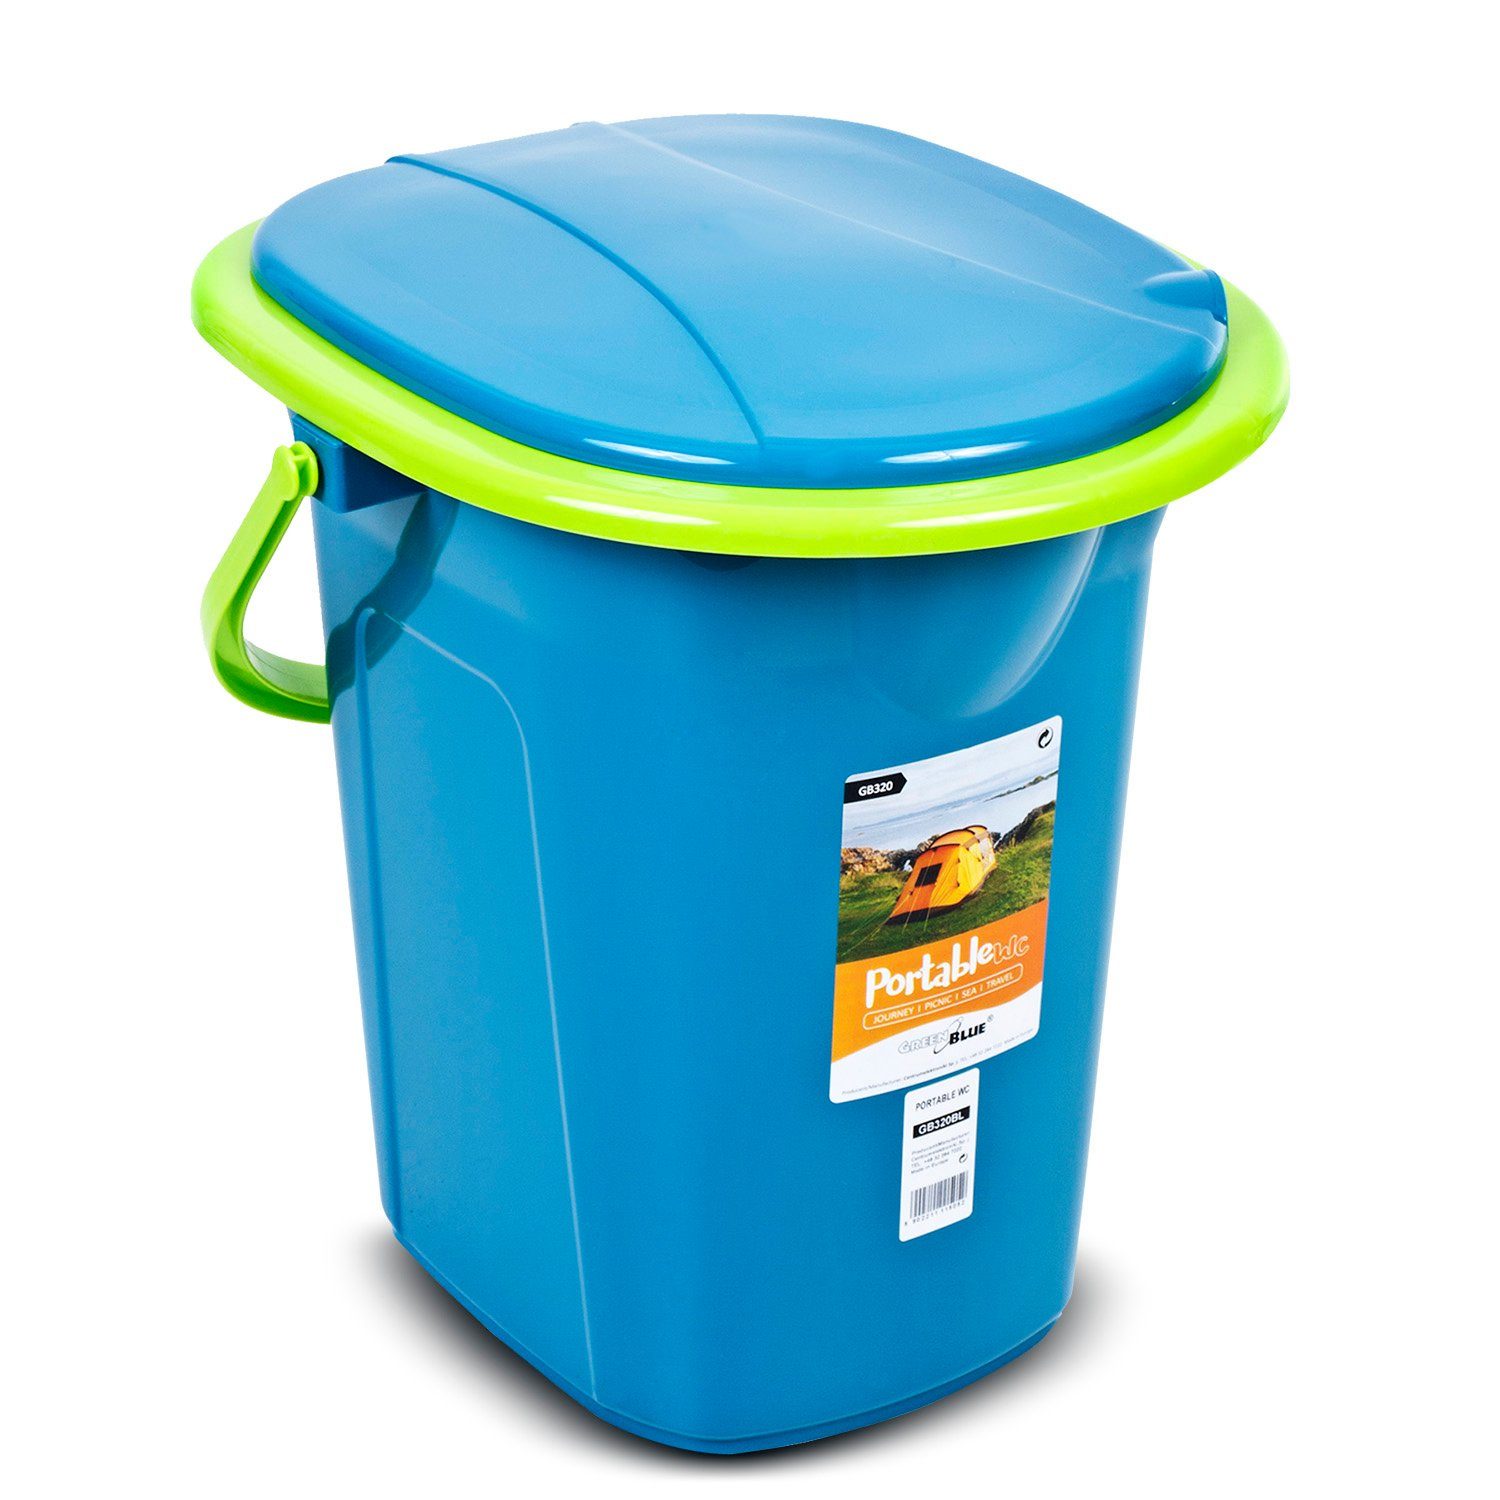 Tragegriff Türkis-Limone GB320, mit GreenBlue Toilettenpapierhalter / Campingtoilette und Auskipp-Hilfe